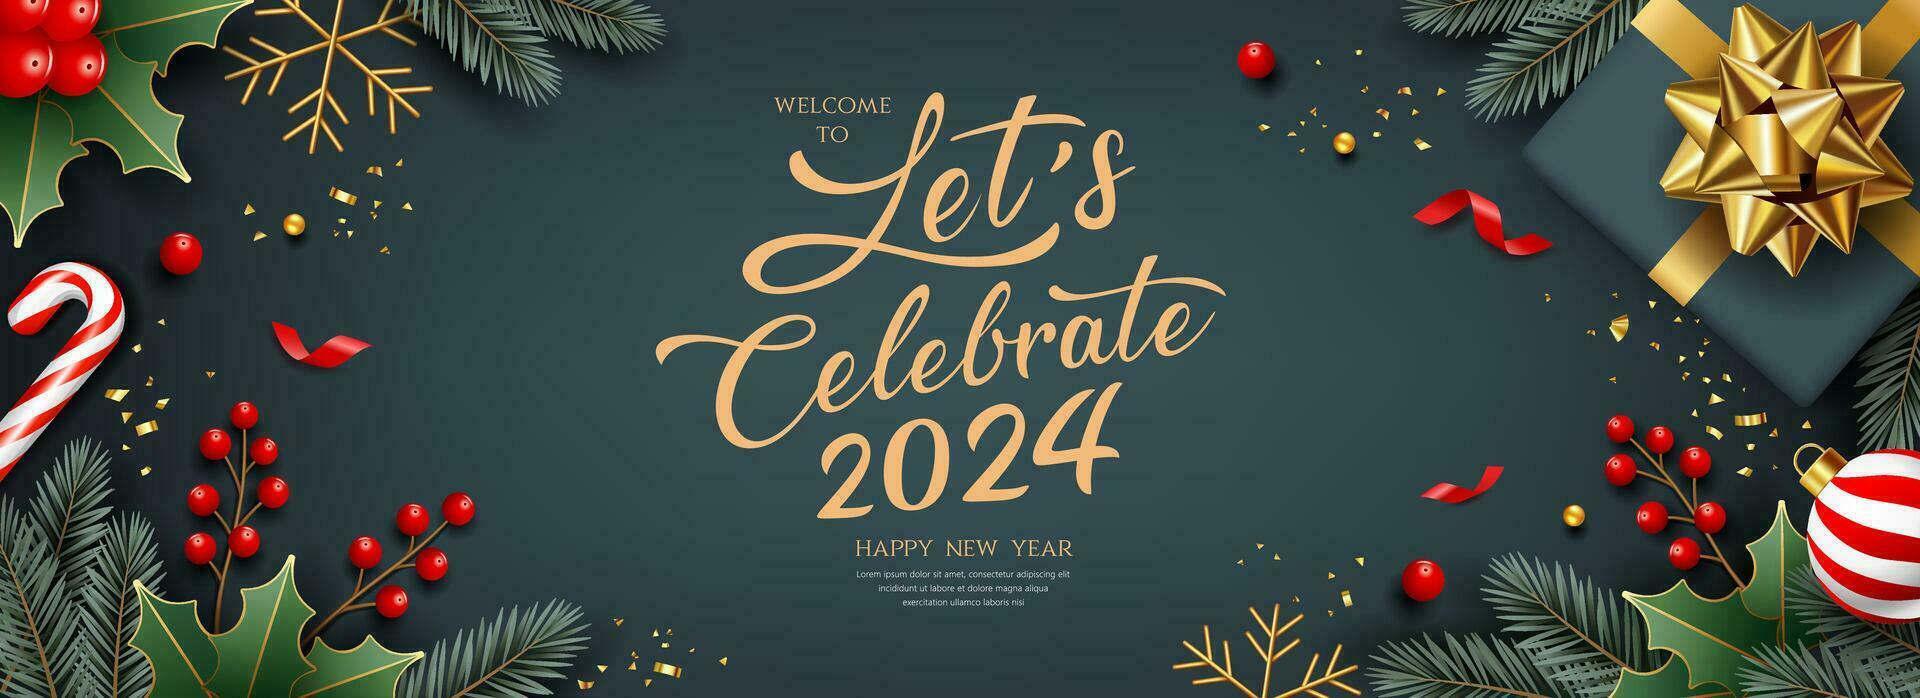 2024 låt oss fira glad jul och Lycklig ny år, baner hälsning kort design på mörk grå bakgrund, eps 10 vektor illustration